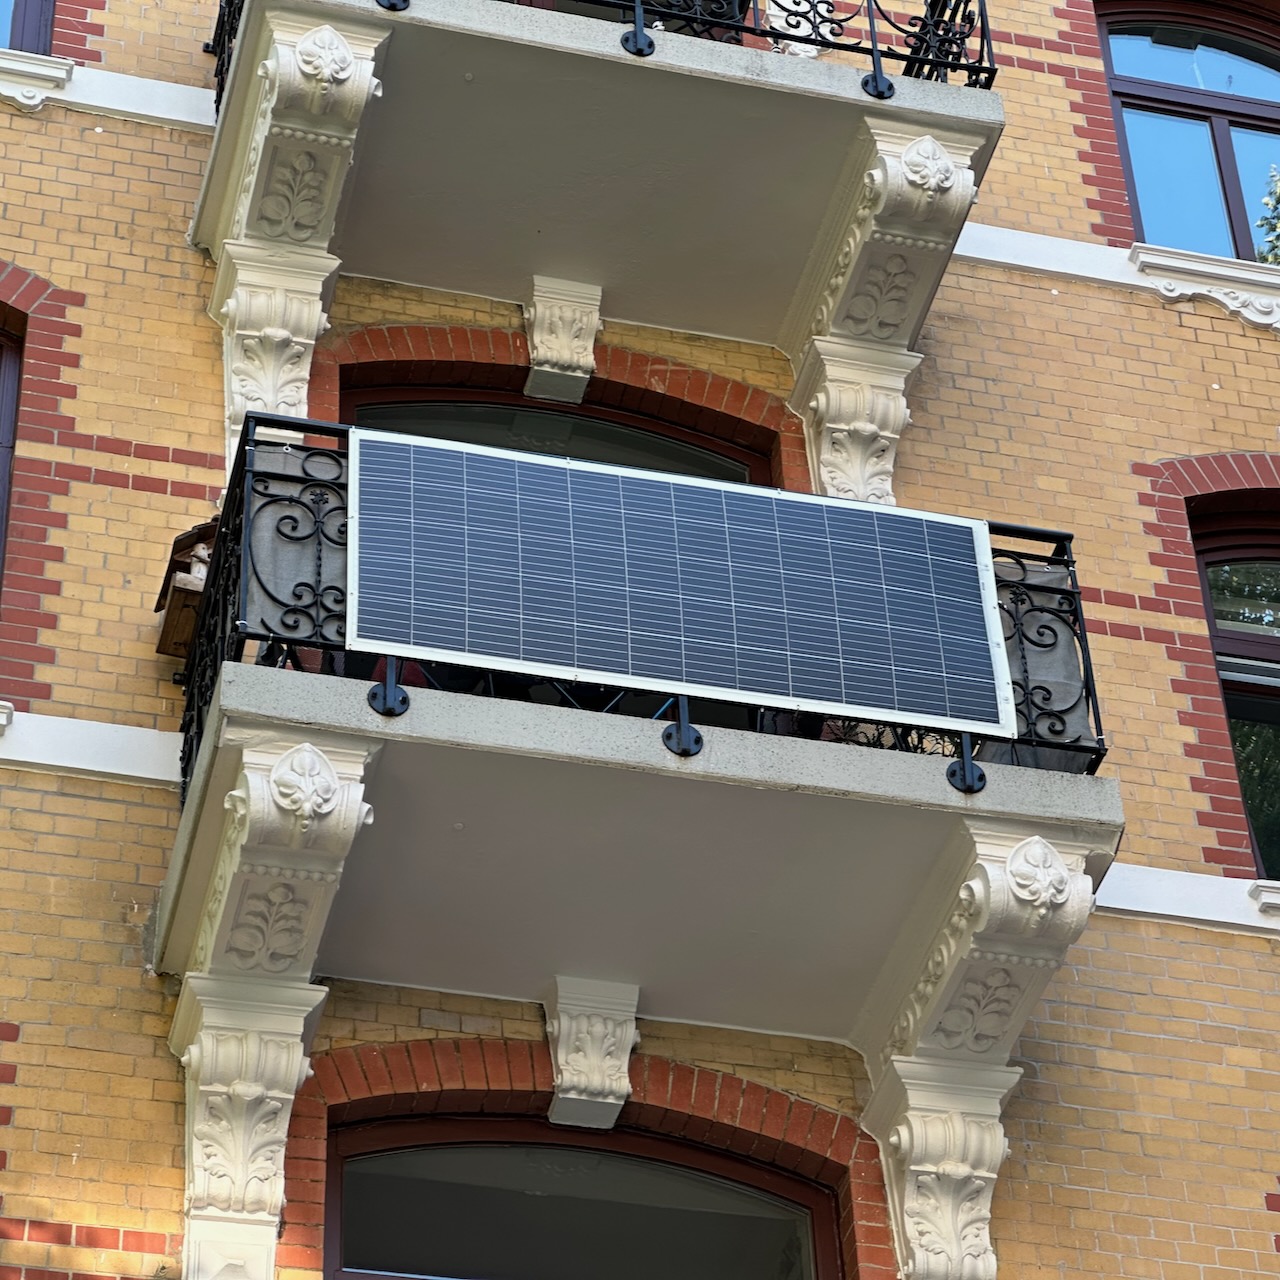 Sunman Balkonkraftwerk mit einem Solarmodul am Balkon